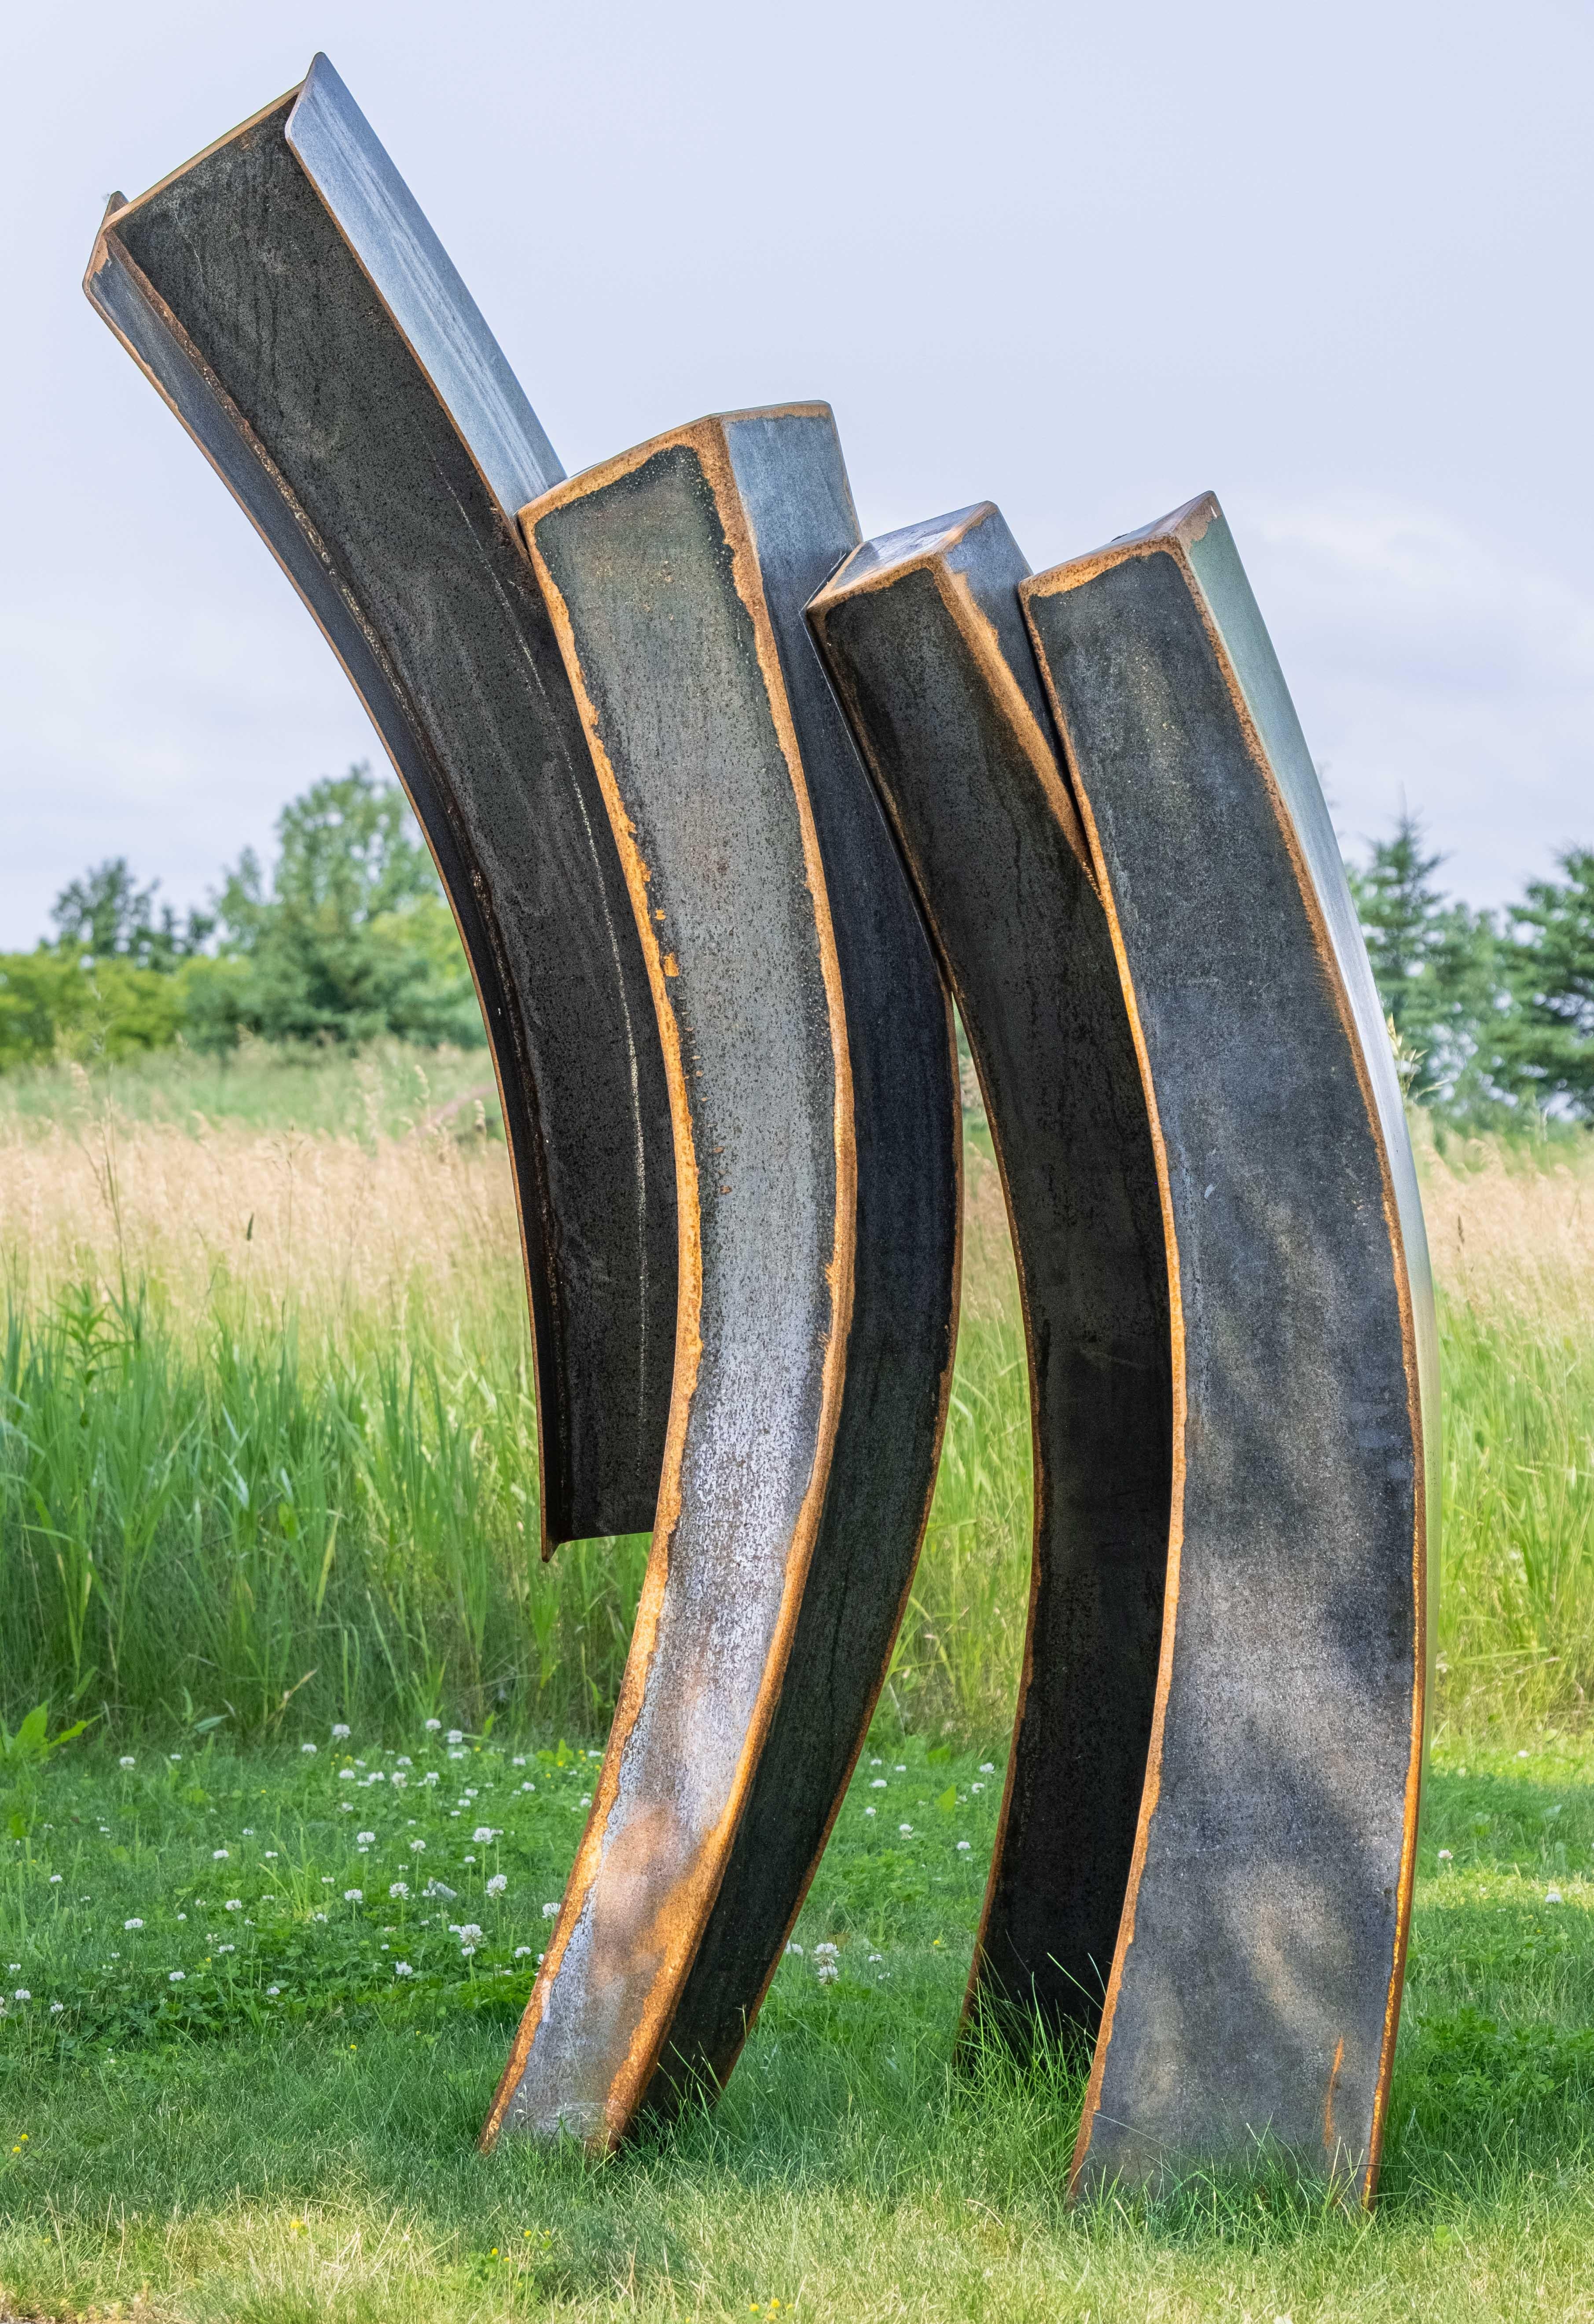 Claude Millette Abstract Sculpture - Corpheum XVIII - large, geometric, abstract, corten steel outdoor sculpture